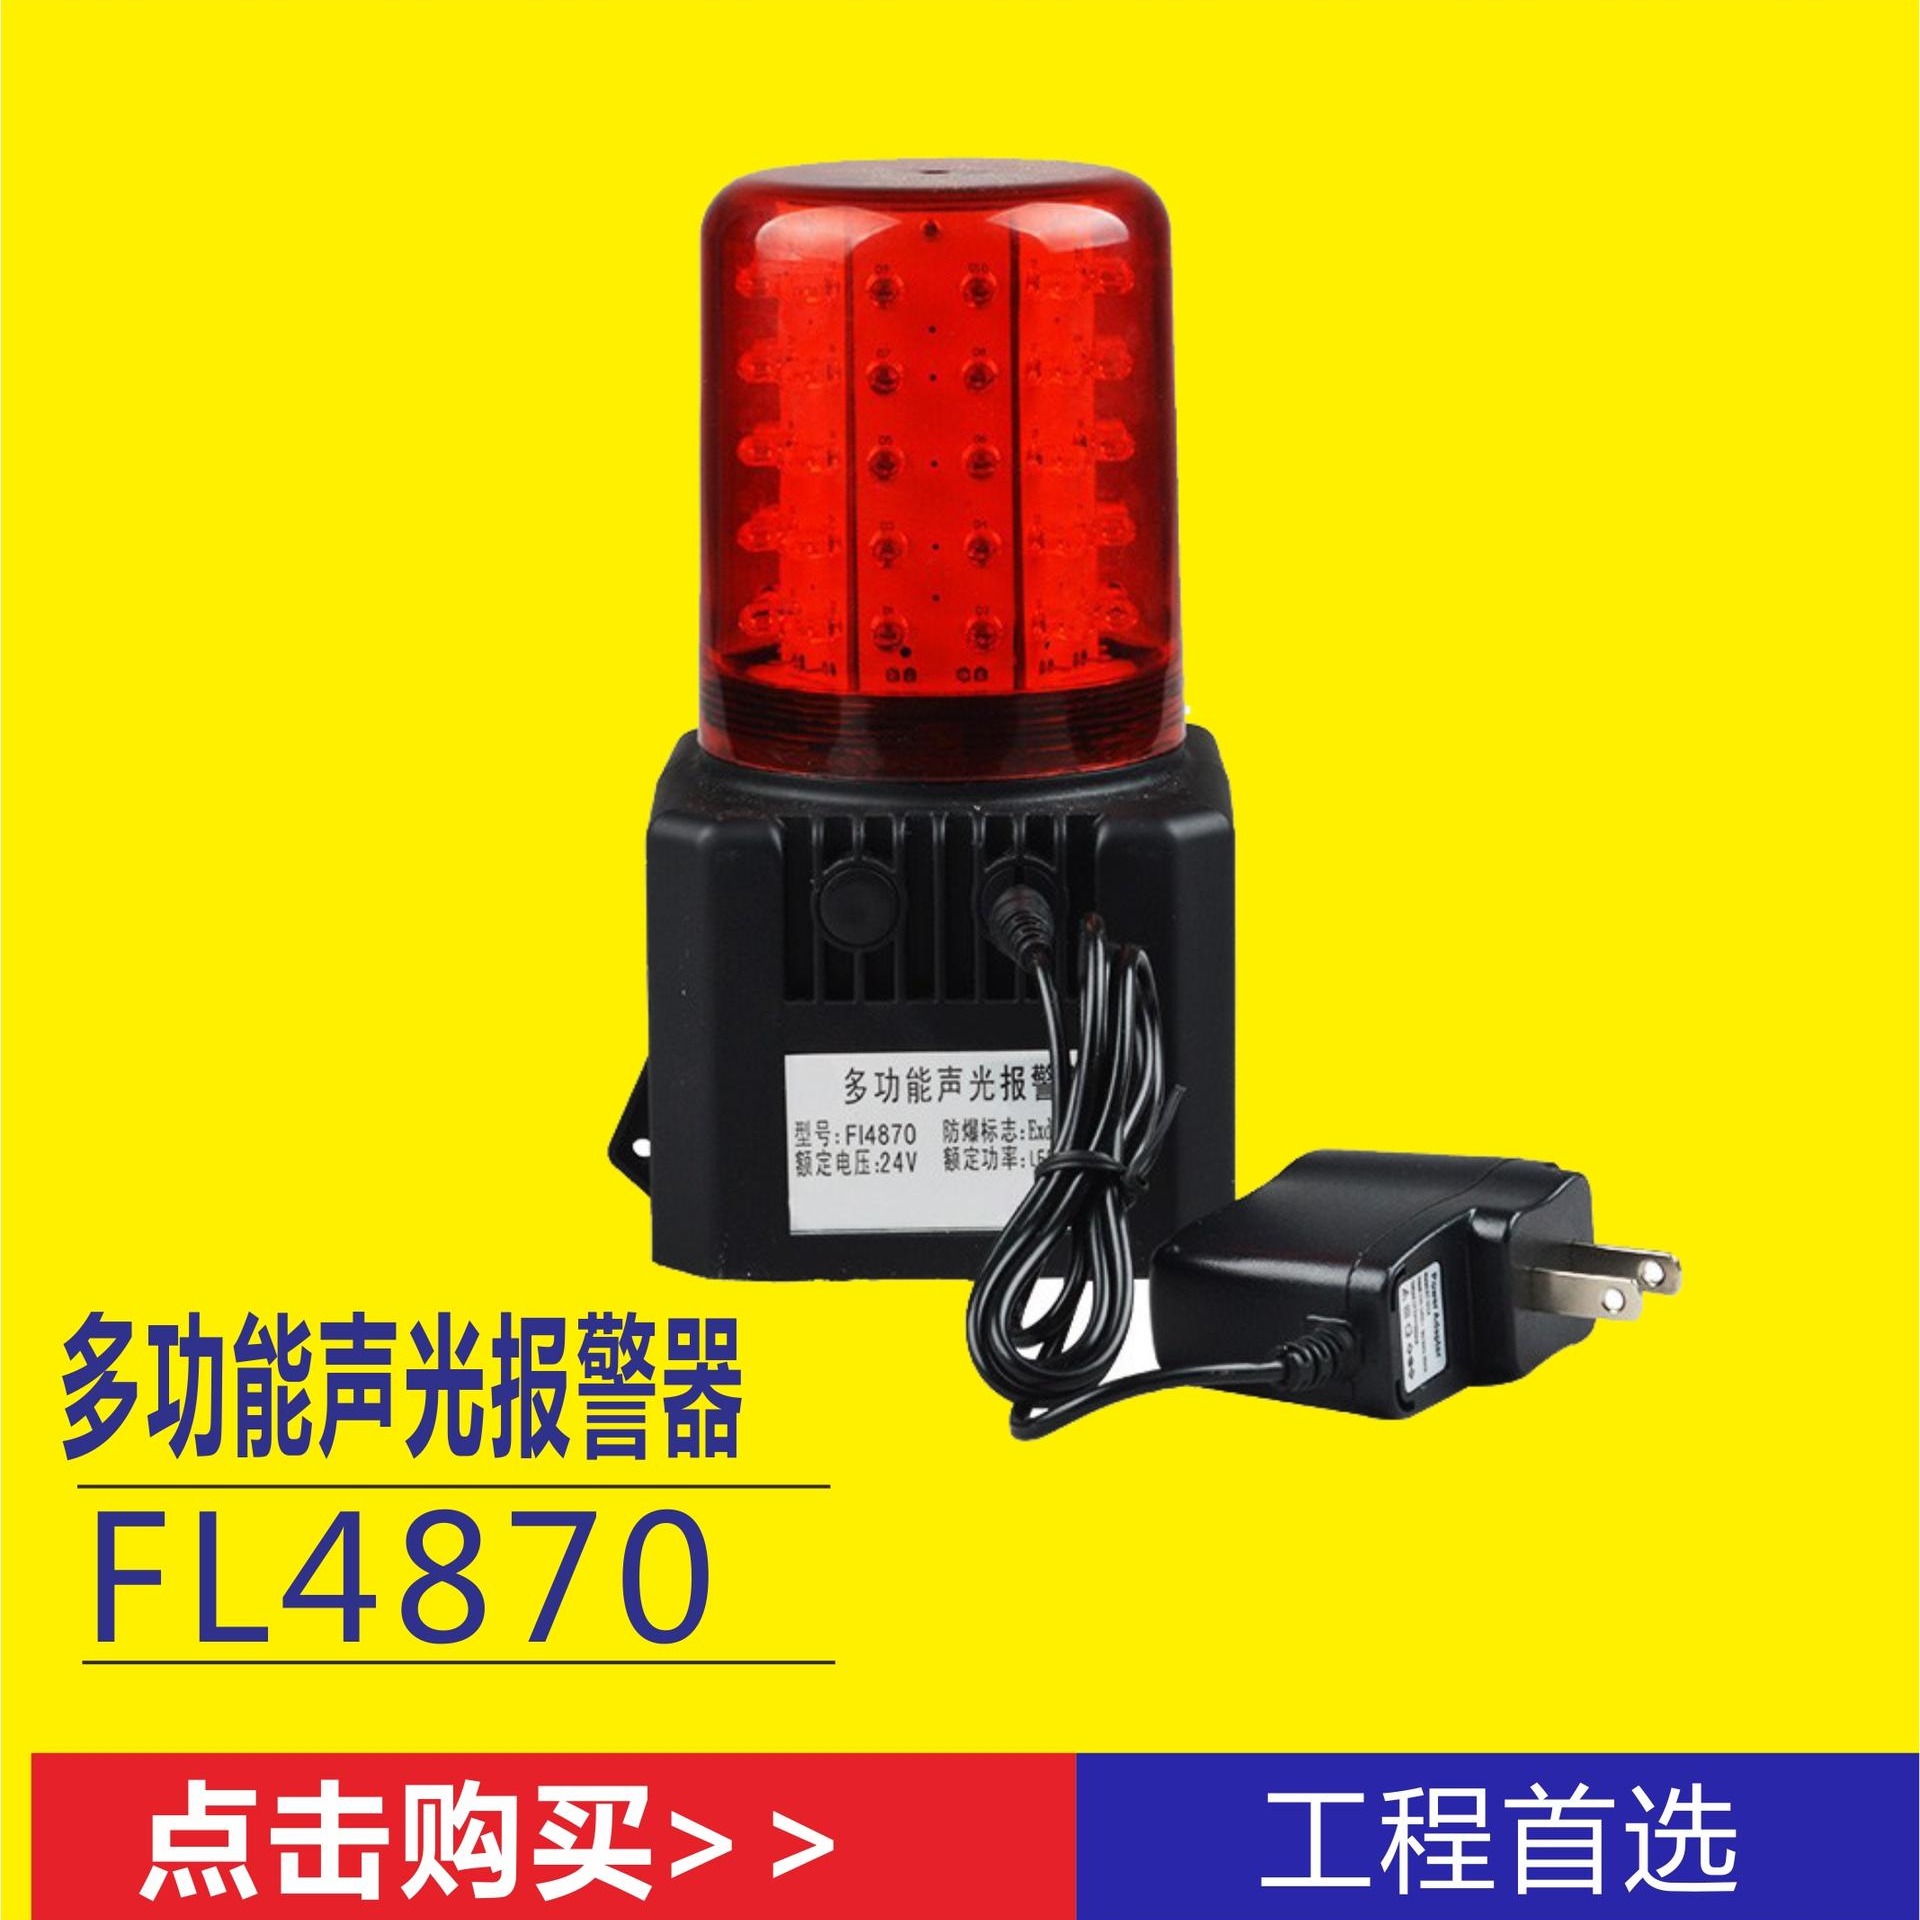 洲创电气SDF4900充电式信号指示灯 铁路声光呼救信号指示器 施工场所安全警示灯 各种报警抢险应急灯图片